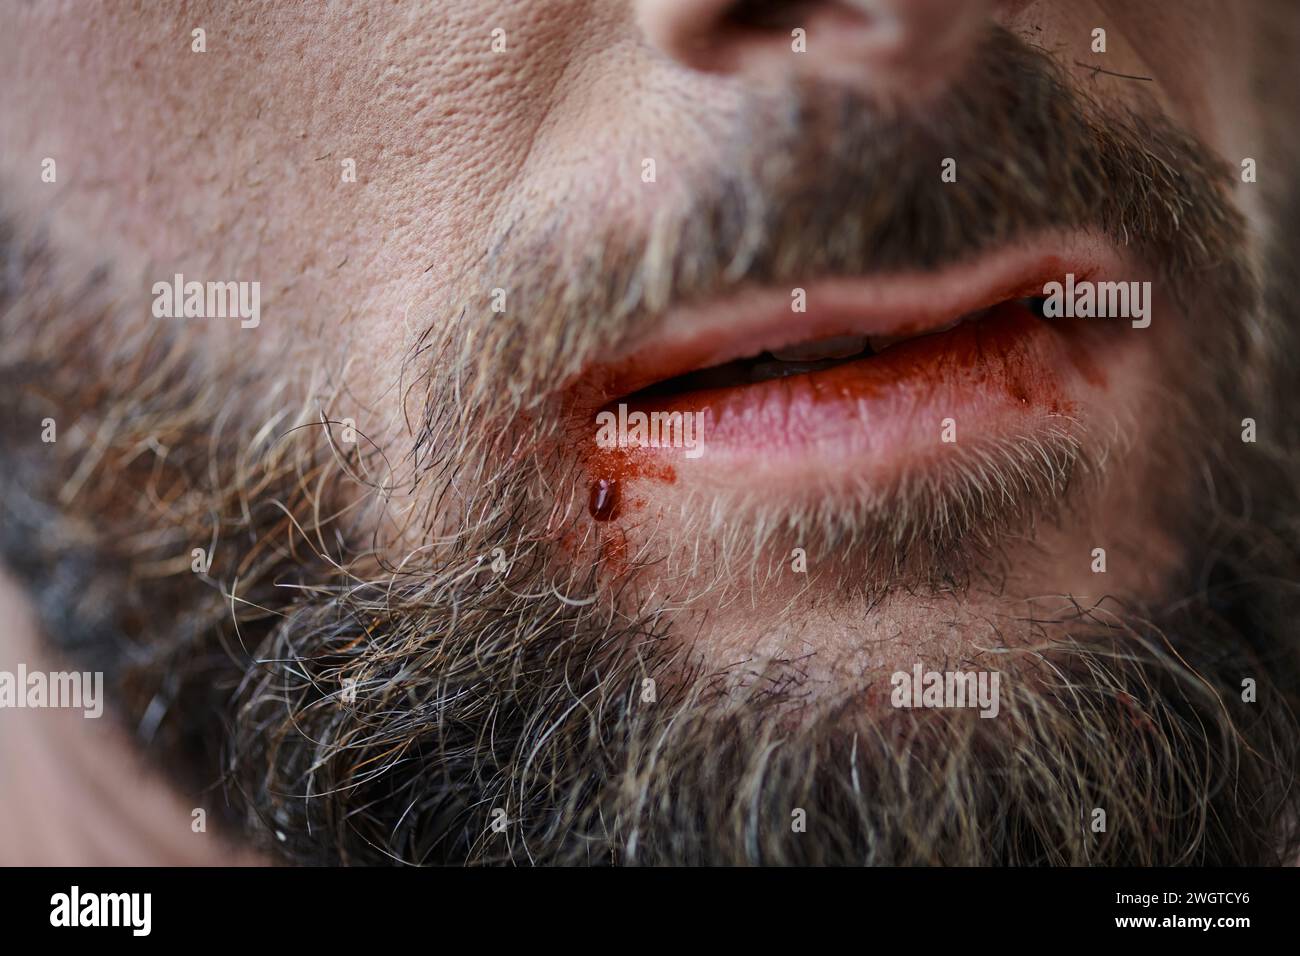 Zugeschnittene Ansicht eines ängstlichen Mannes mit Bart, der während einer depressiven Episode auf die Lippen beißt Stockfoto